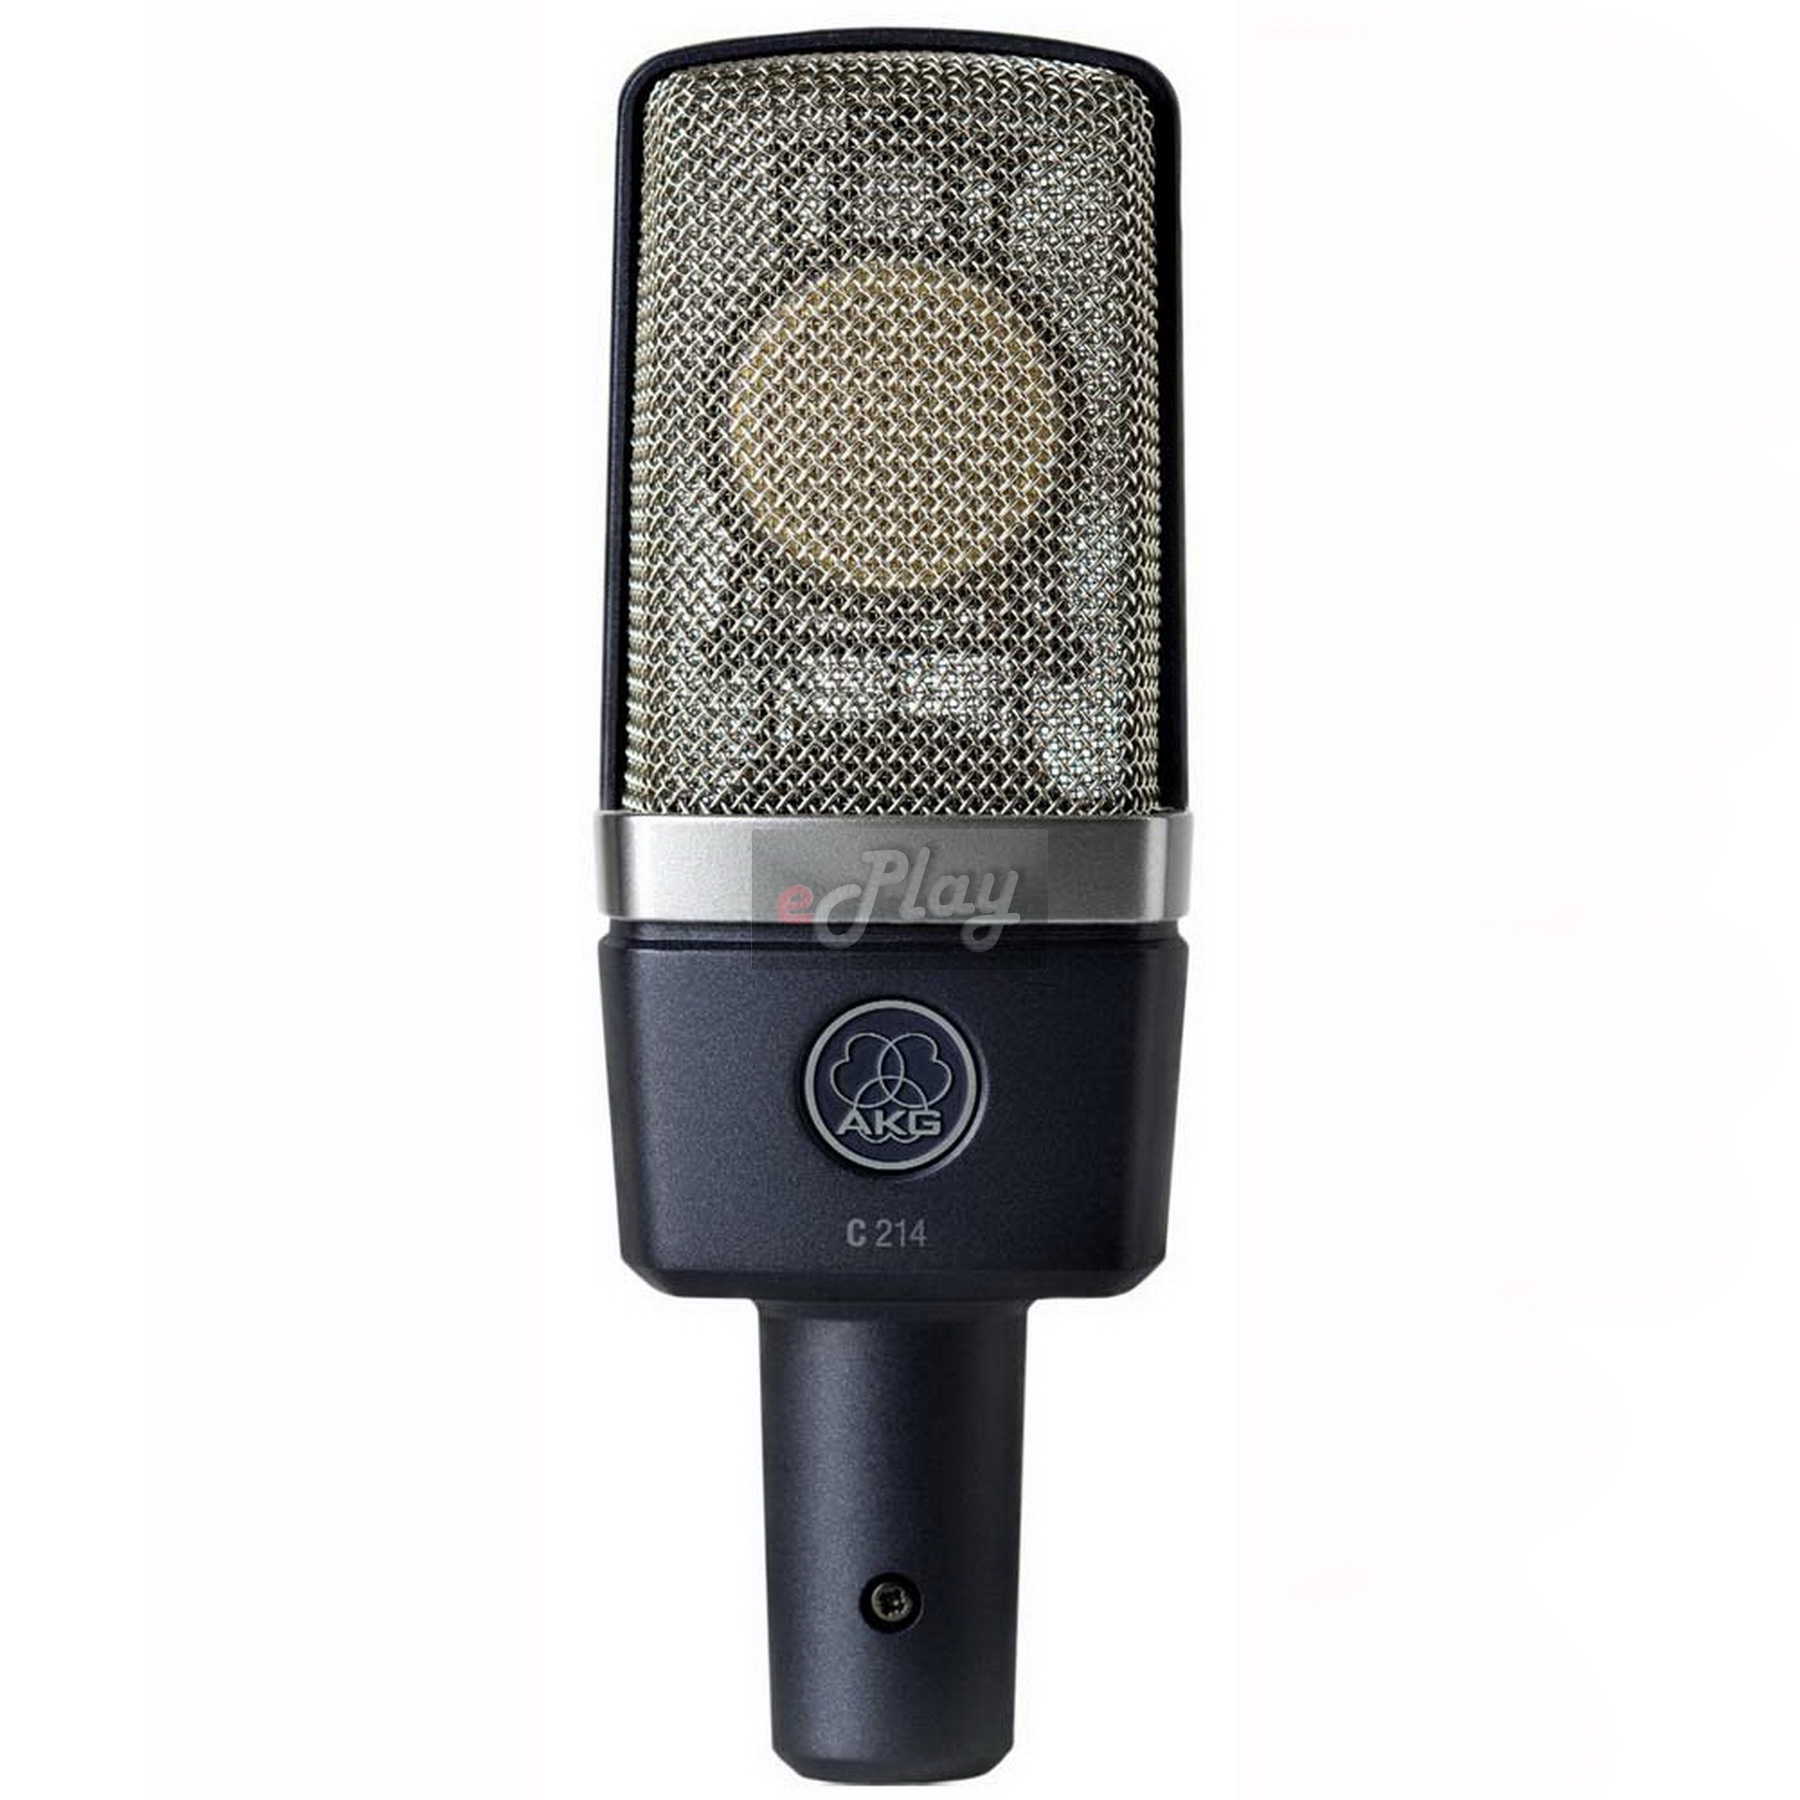 AKG C 214 štúdiový mikrofón | Obrázok 1 | eplay.sk